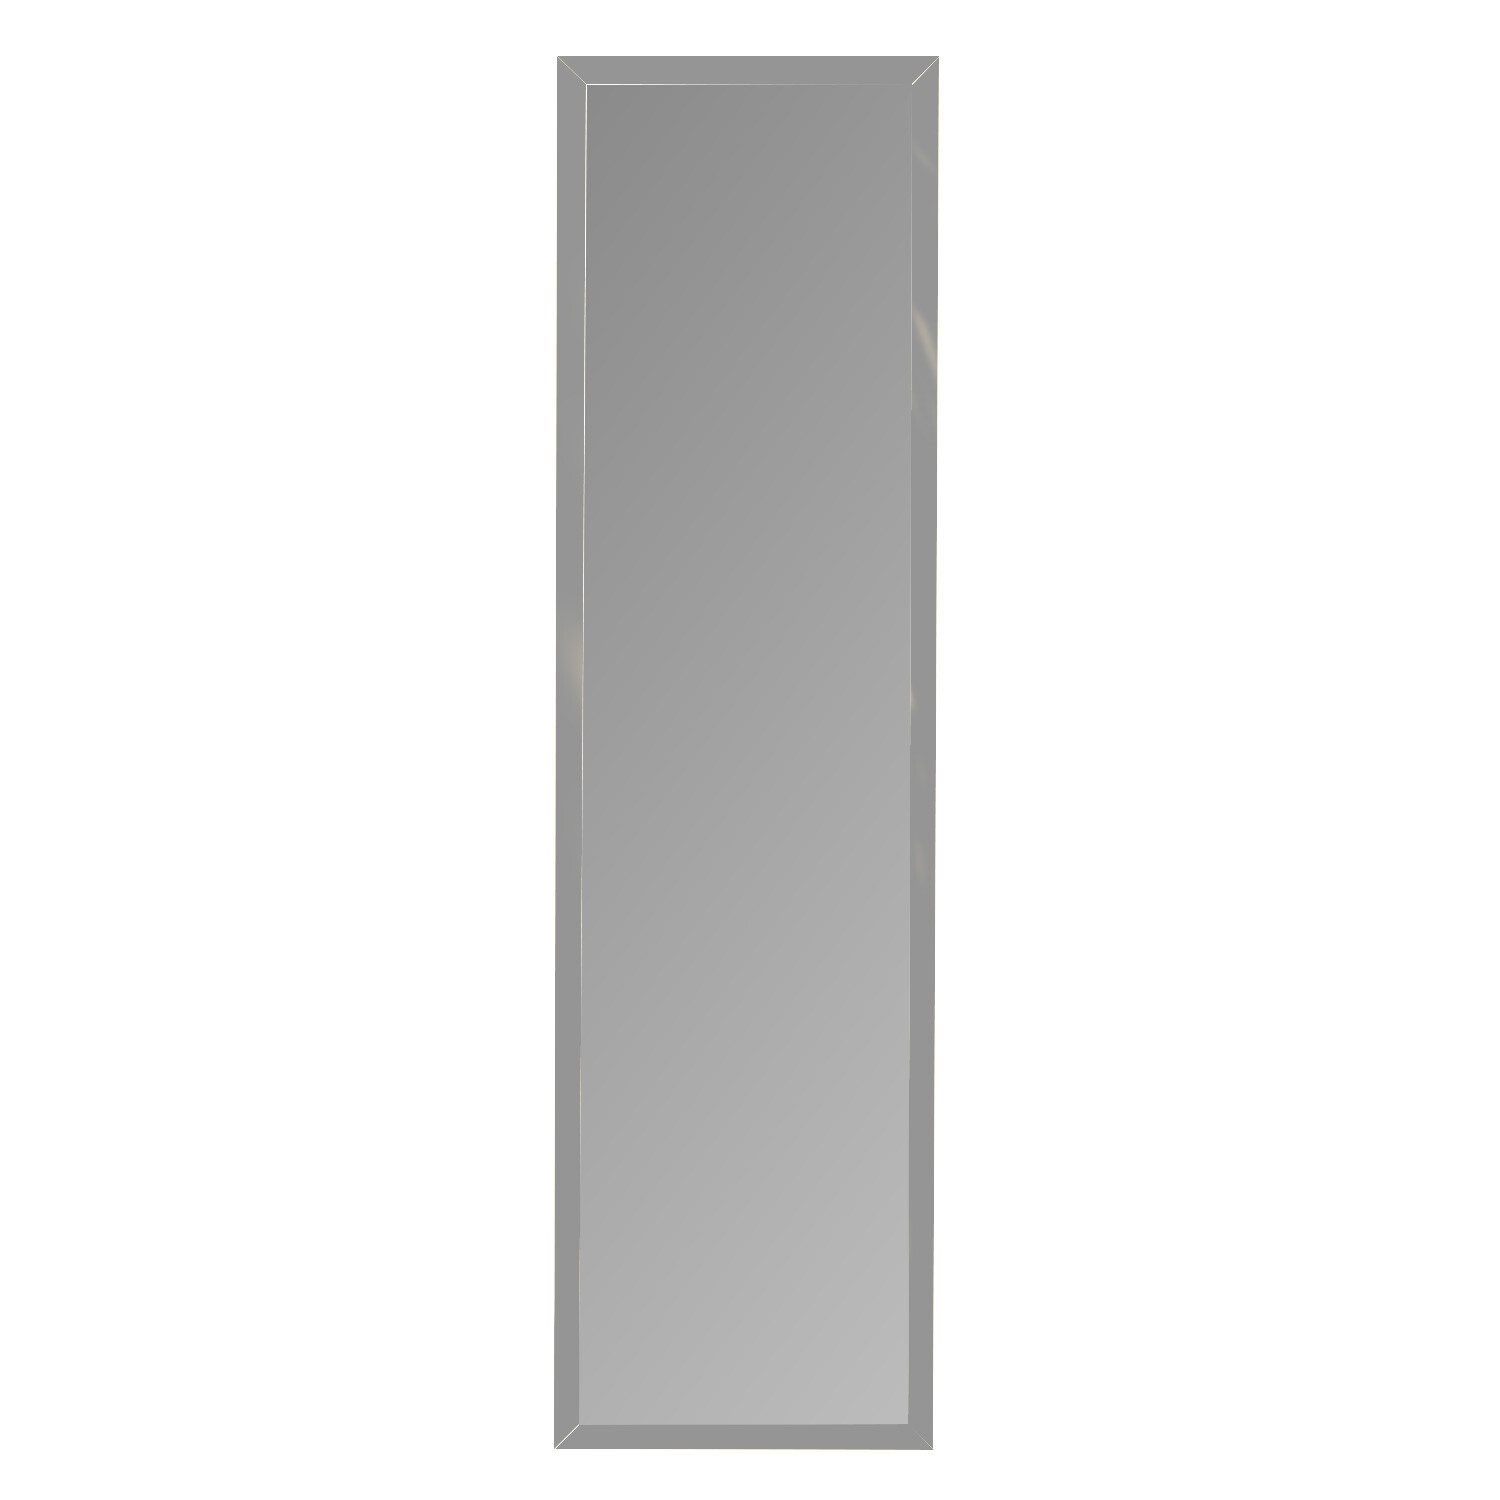 Single Metallic Over Door Mirror 123.8 x 33.8cm in Assorted styles Image 2